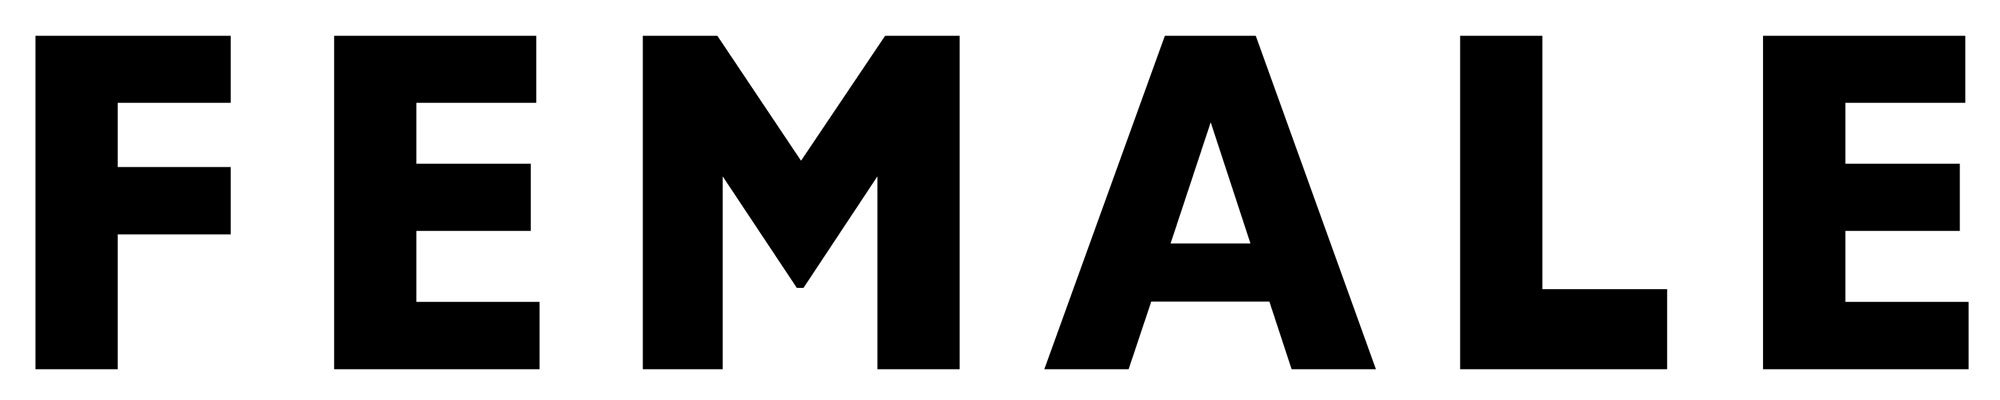 female-logo.jpg